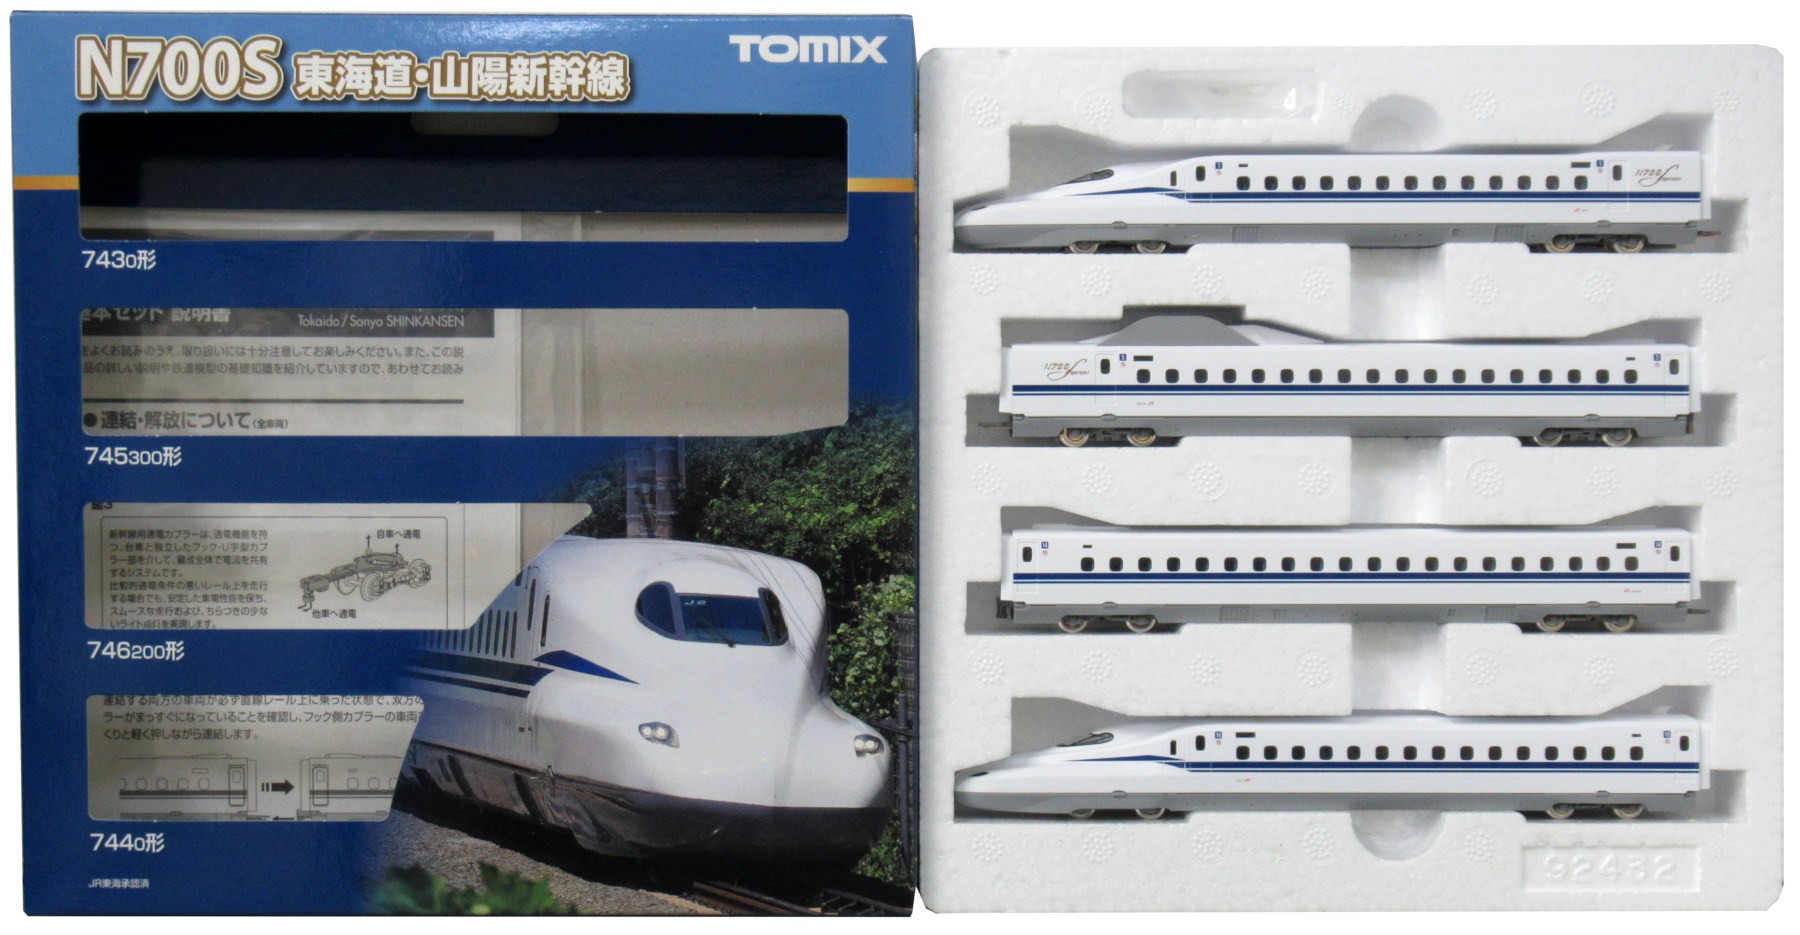 公式]鉄道模型(98424+98425+98426JR N700系(N700S)東海道・山陽新幹線 